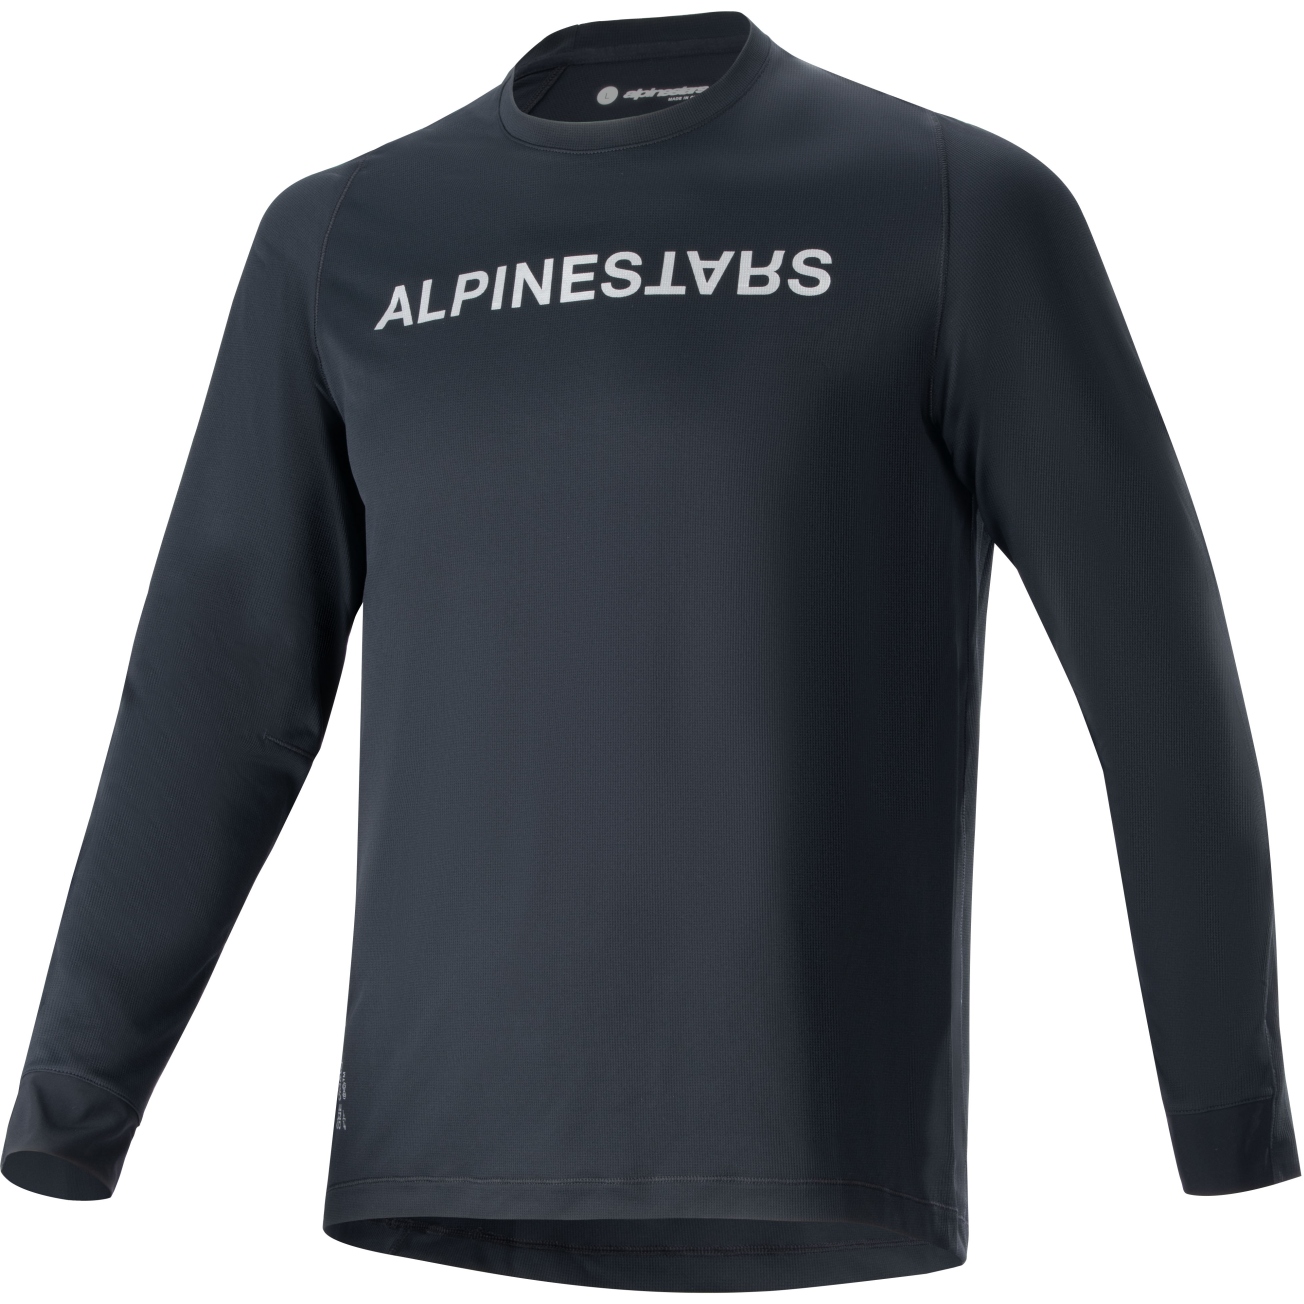 Productfoto van Alpinestars A-Aria Switch Fietsshirt met Lange Mouwen Heren - zwart